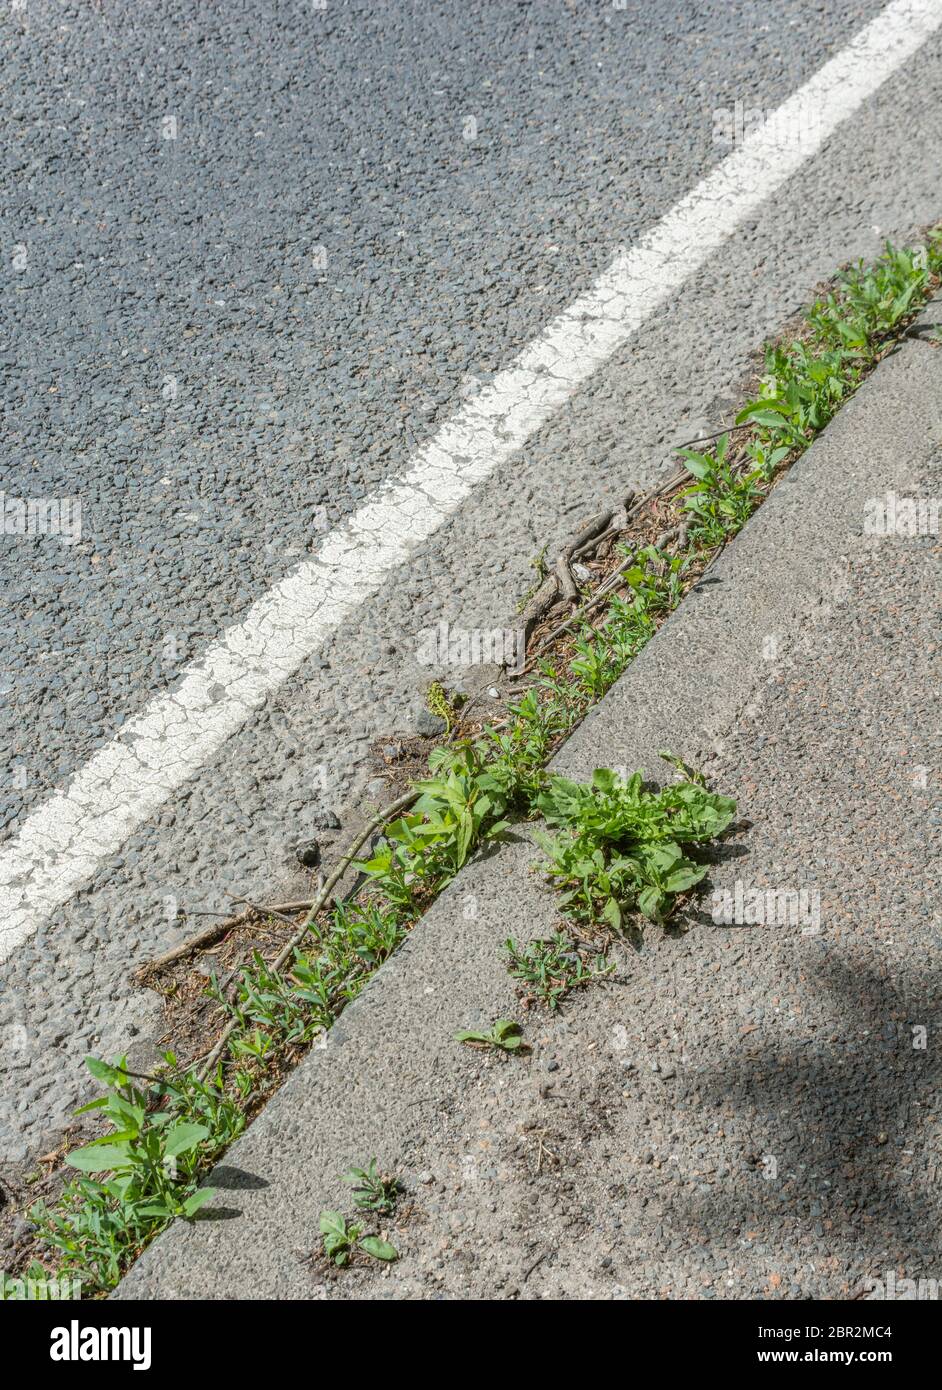 Unkraut am Straßenrand bei Sonnenschein. Hauptpflanze unten rechts ist Löwenzahn / Taraxacum officinale, rechts neben ein wenig Knotergras & was scheint, Rotschenkel zu sein. Stockfoto